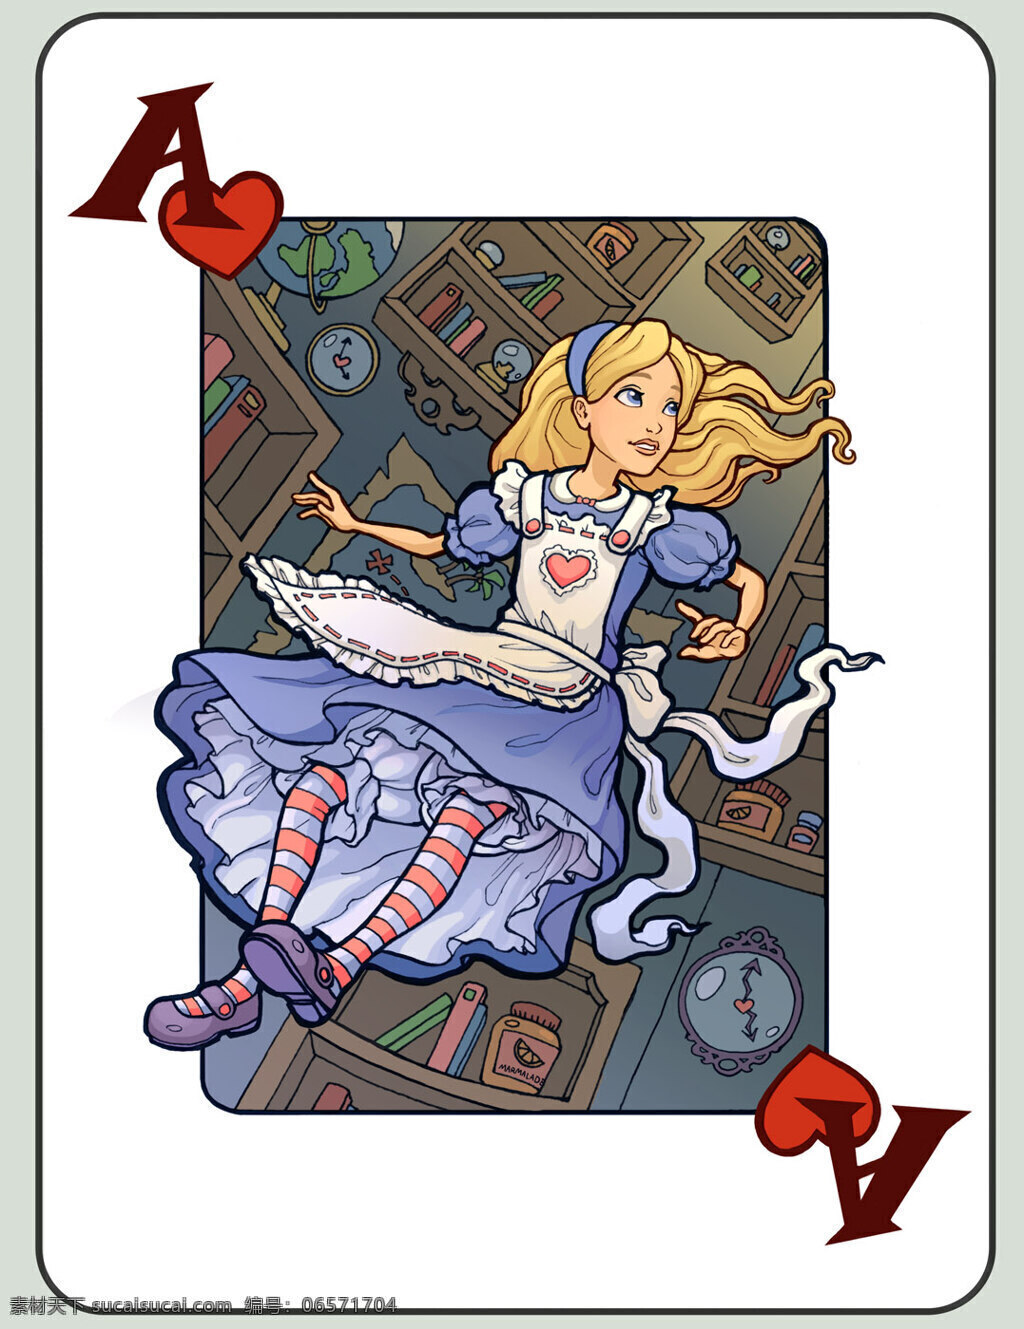 爱丽丝 梦游 仙境 梦幻 扑克牌 动漫人物 动漫动画